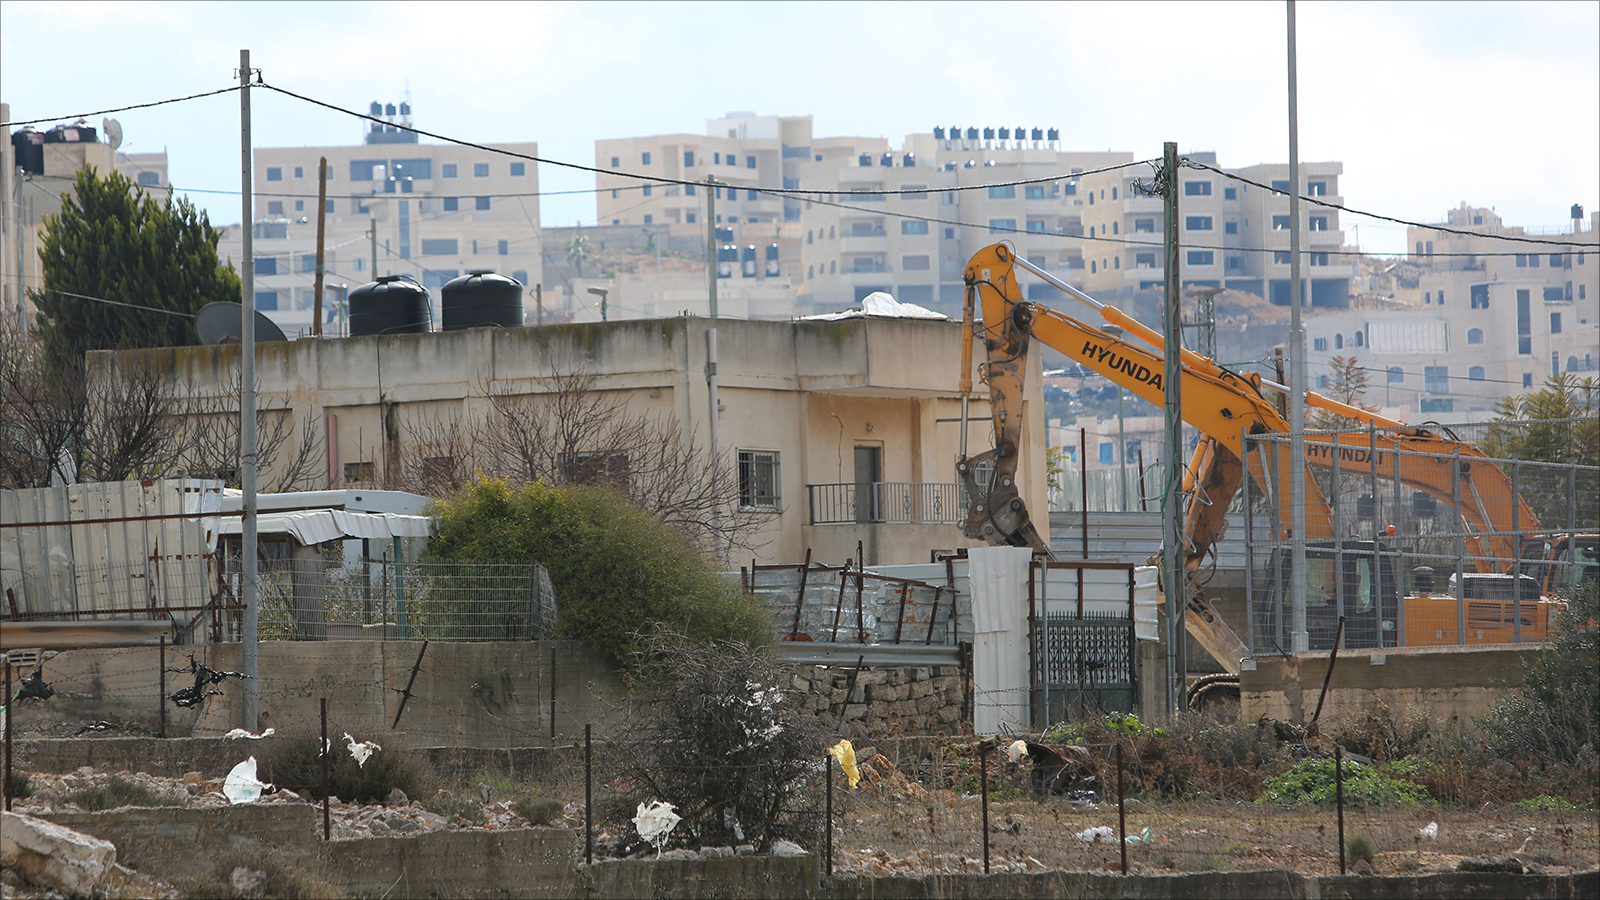 حكومة الاحتلال تعدّ سكان القدس الفلسطينيين متجاوزين للقانون بصورة دائمة (الجزيرة نت)